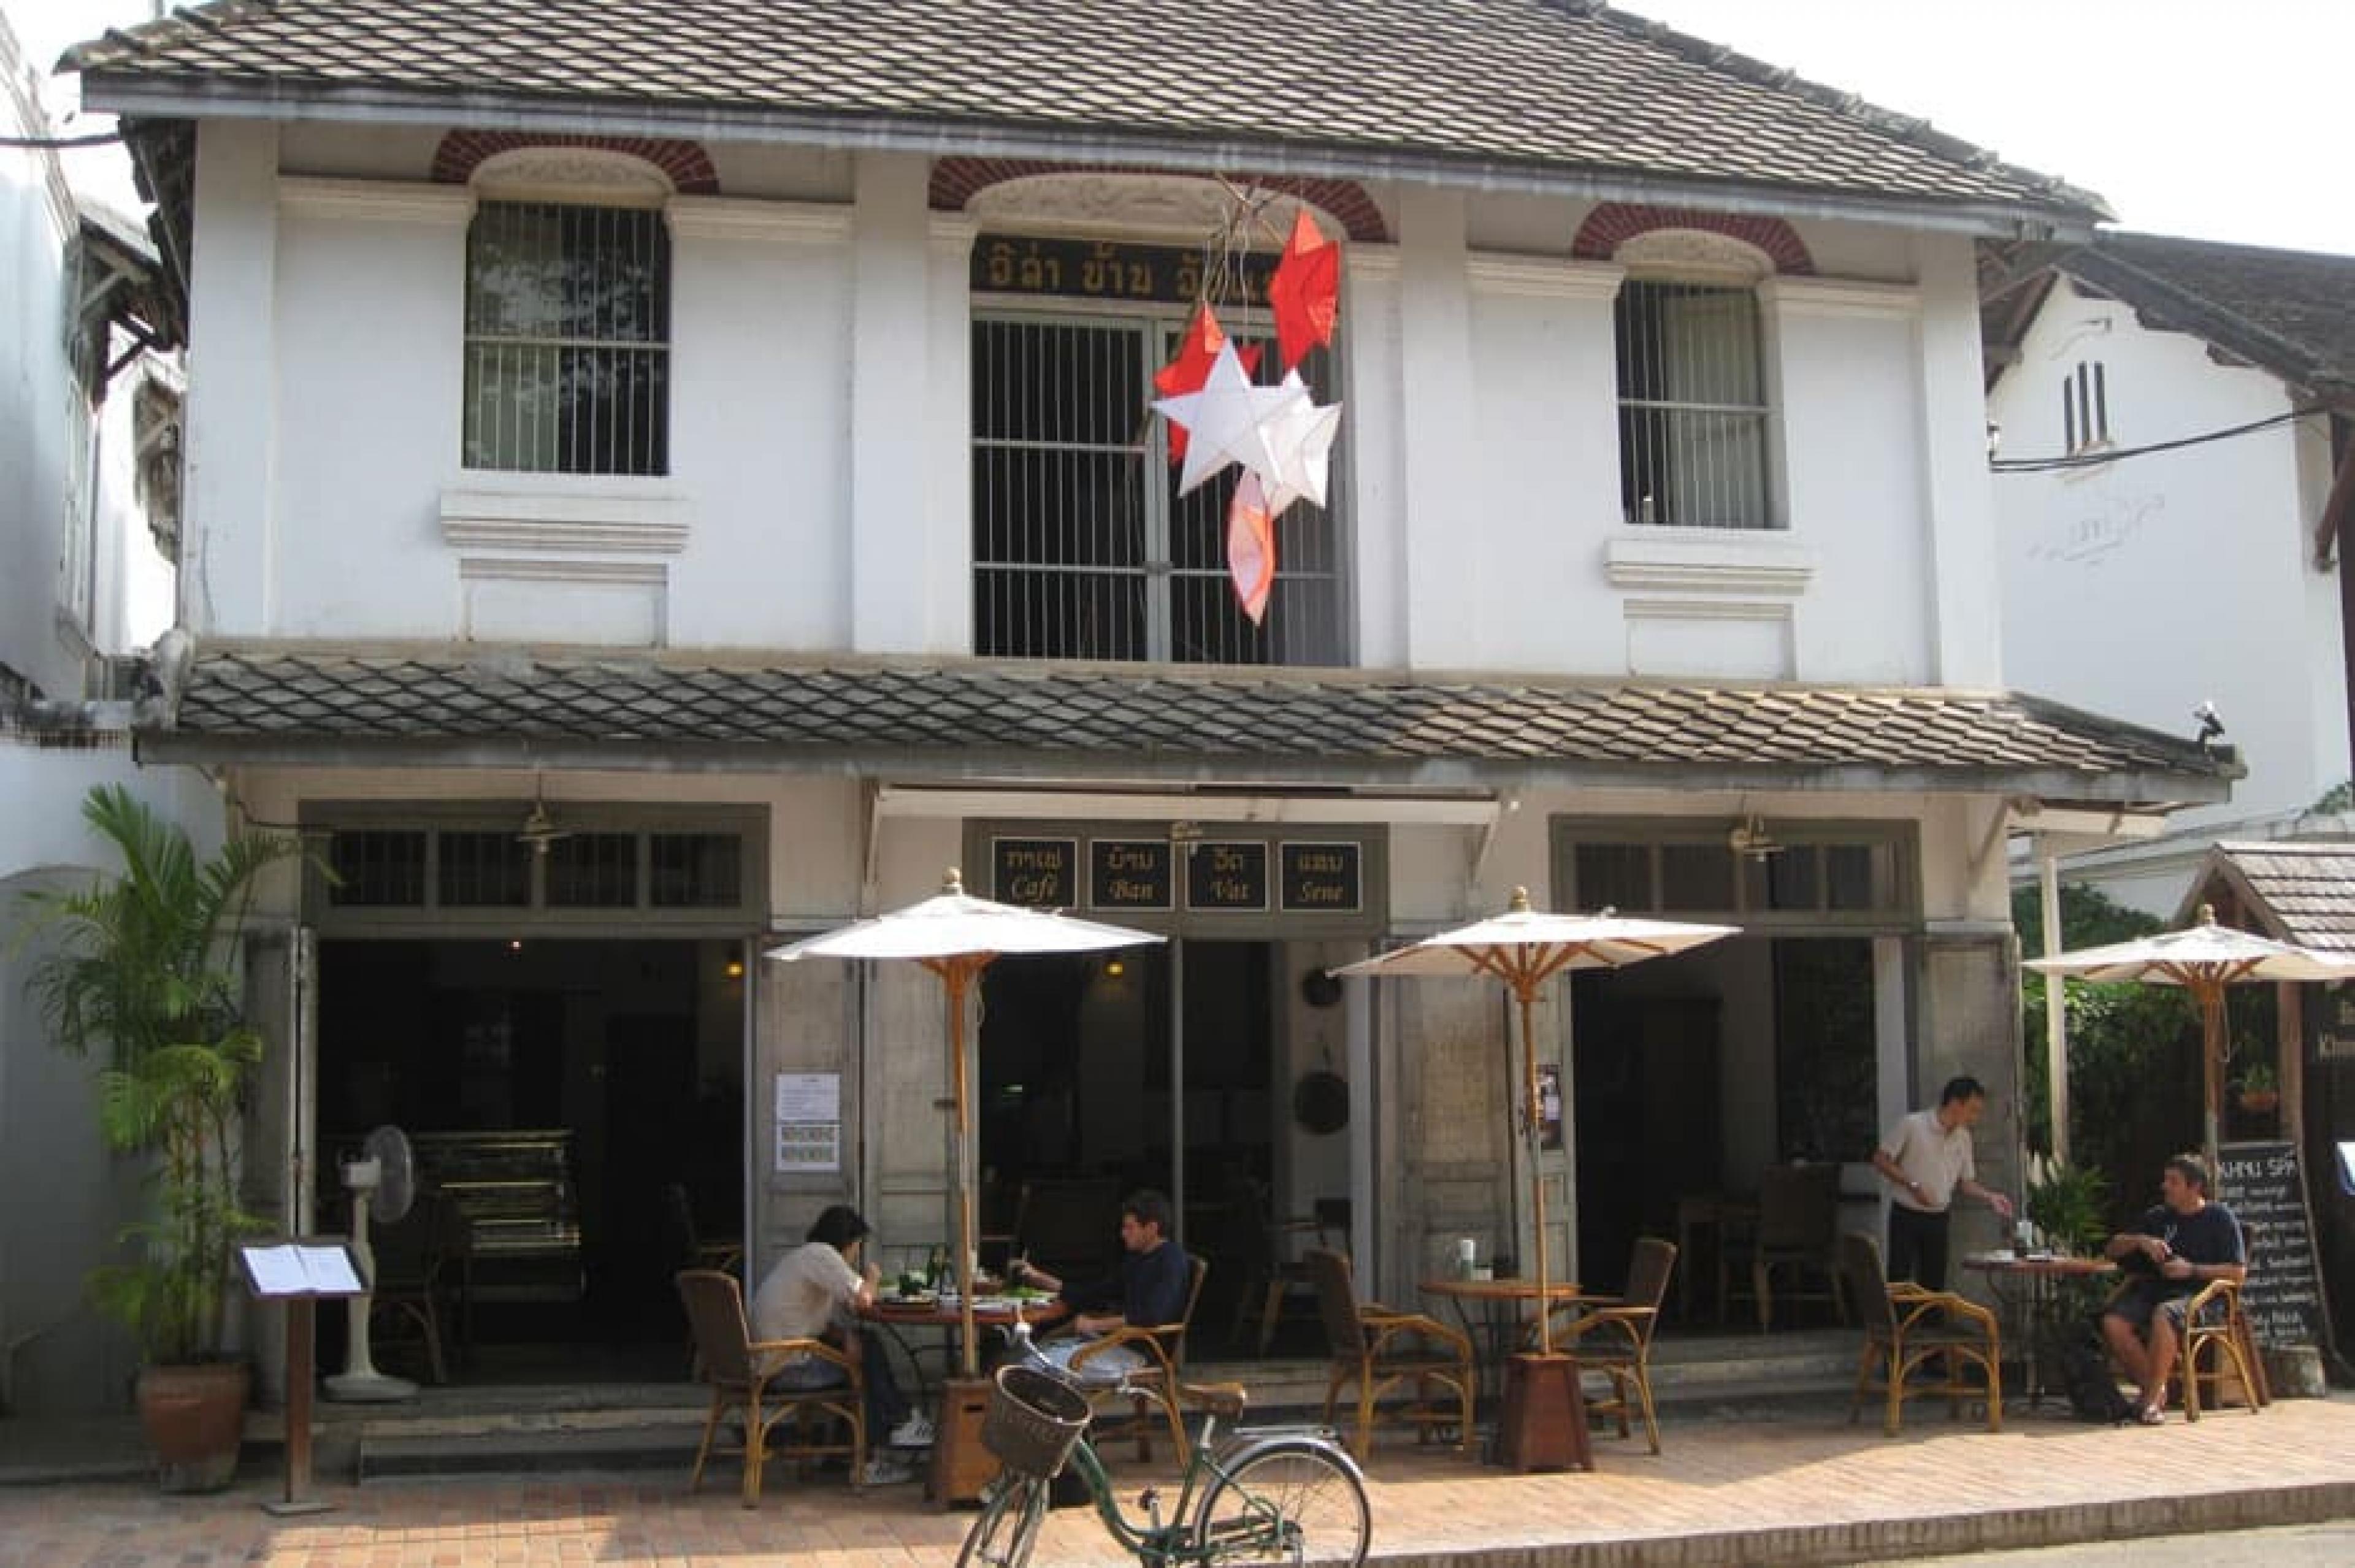 Exterior View - Café Ban Vat Sene, Luang Prabang, Laos